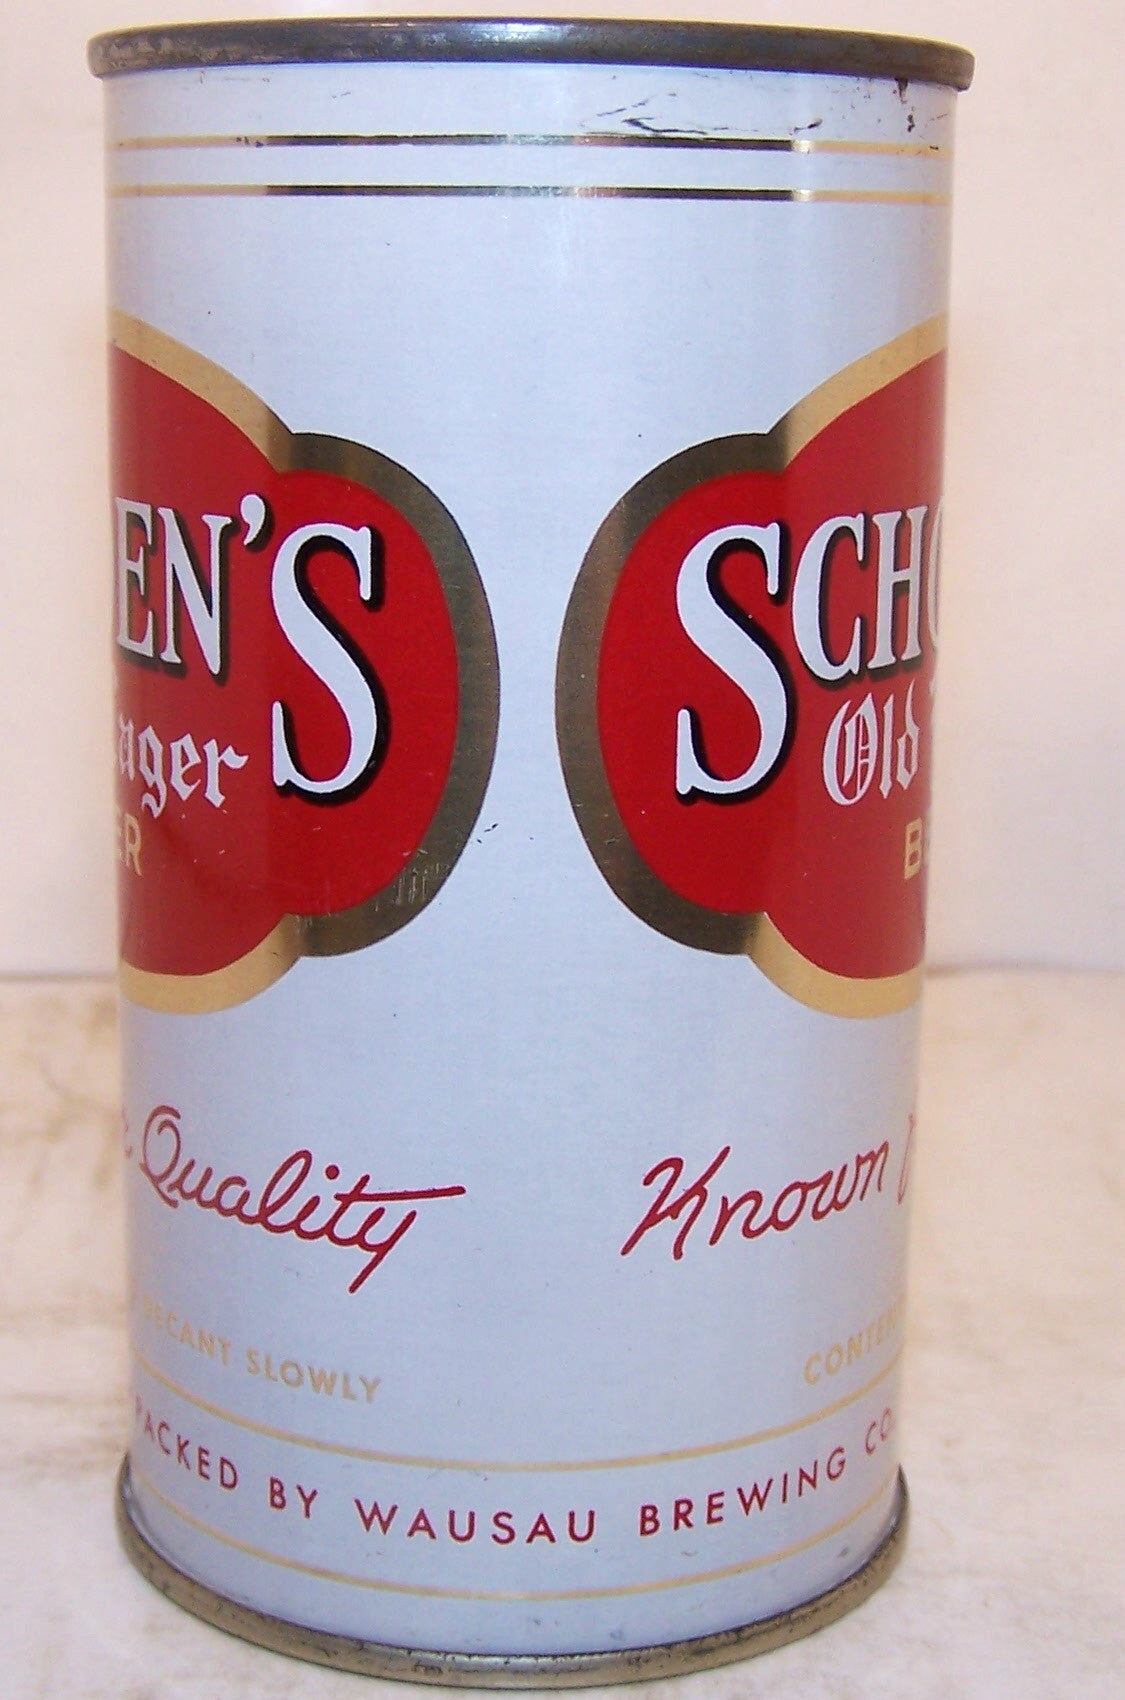 Schoen's Old Lager Beer, USBC 131-36, Grade 1/1+ Sold on 2/22/15